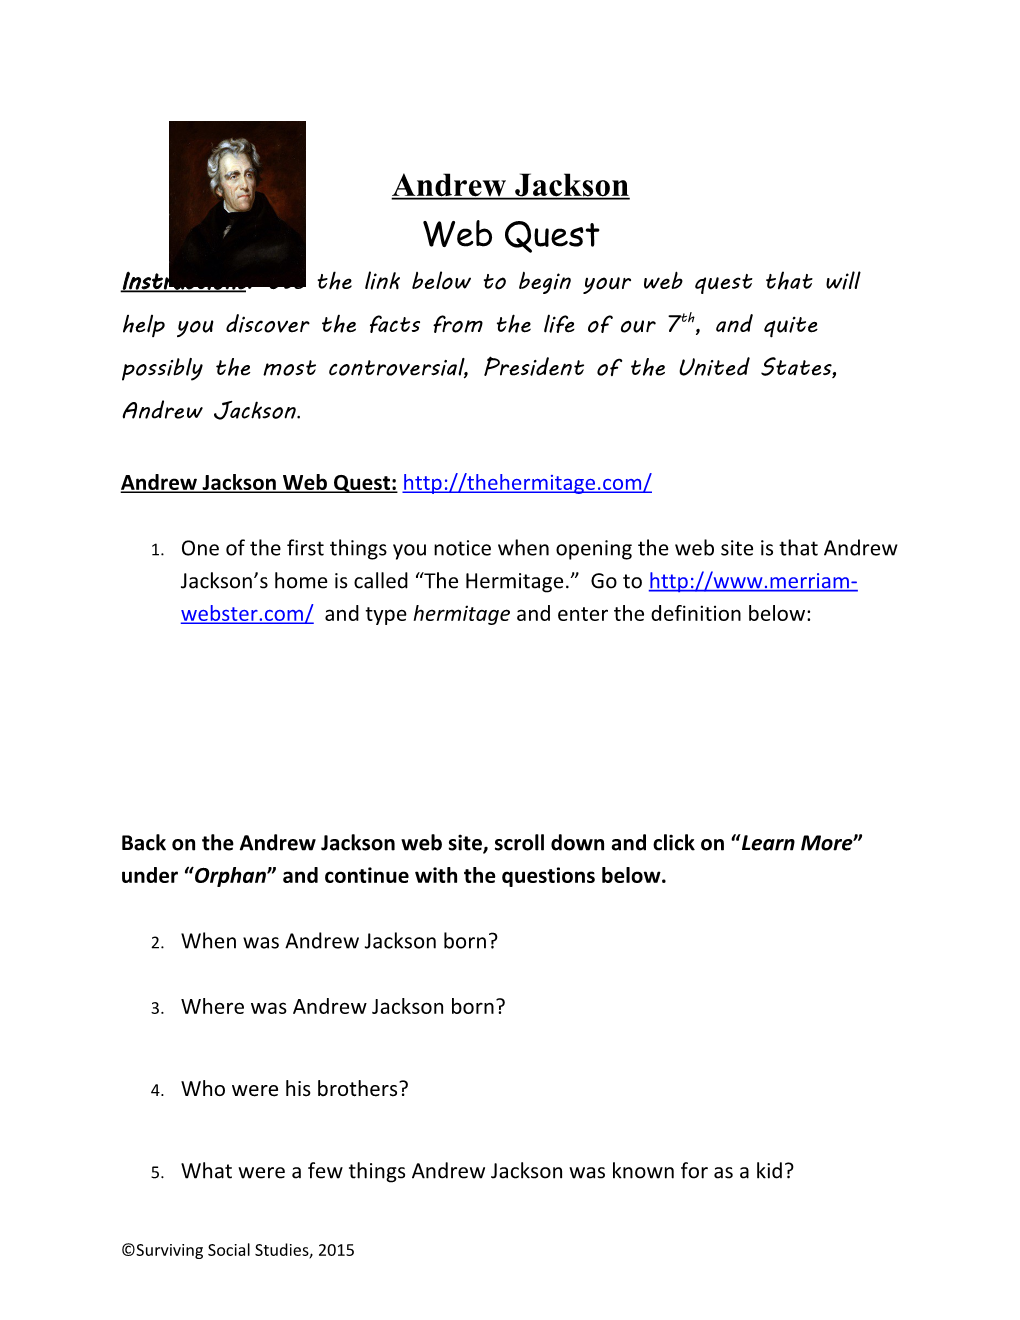 Andrew Jackson Web Quest